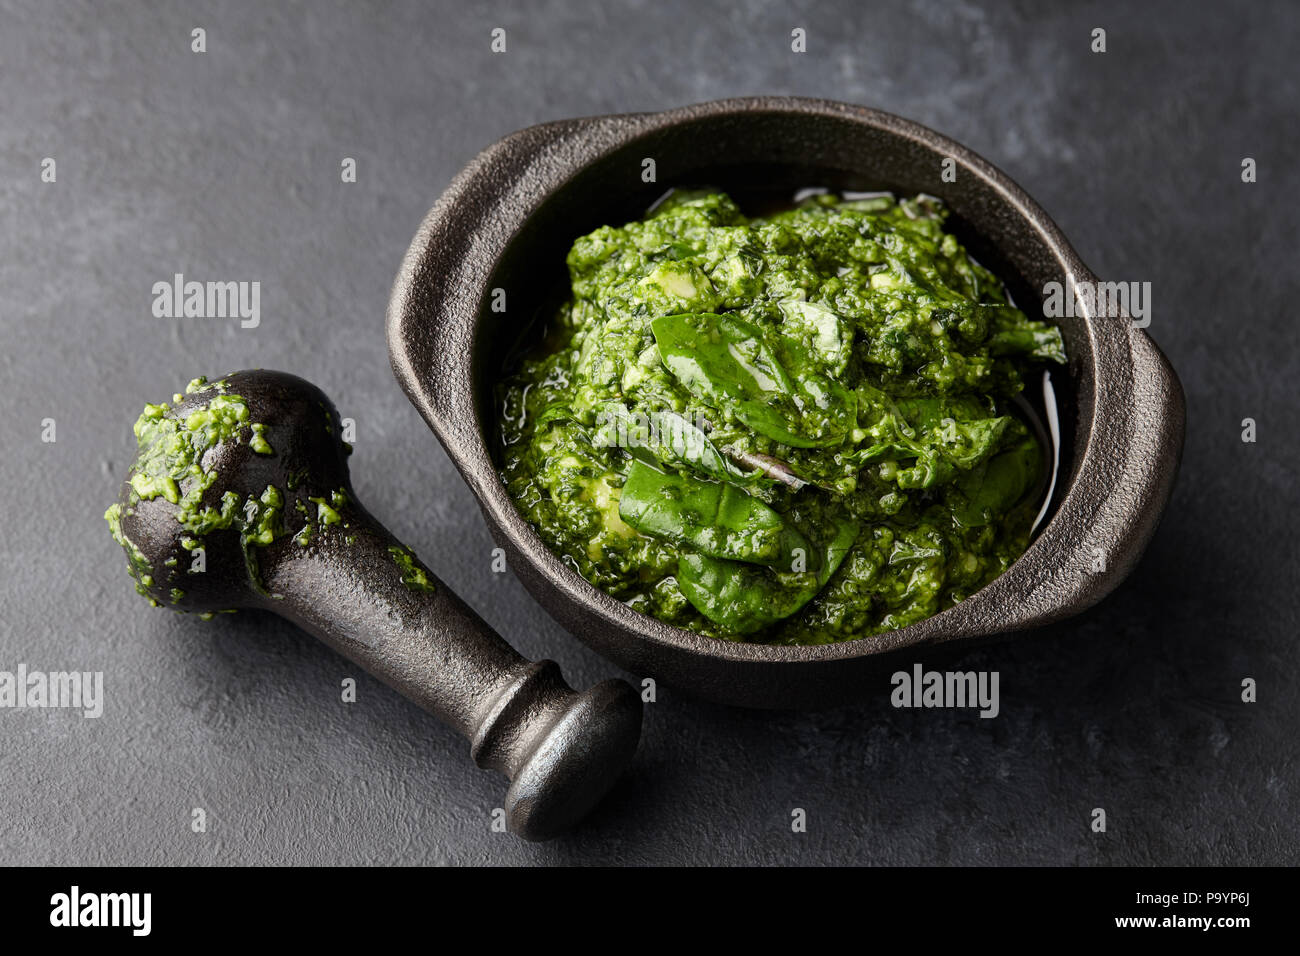 Basil pesto sauce in iron mortar, close up view Stock Photo